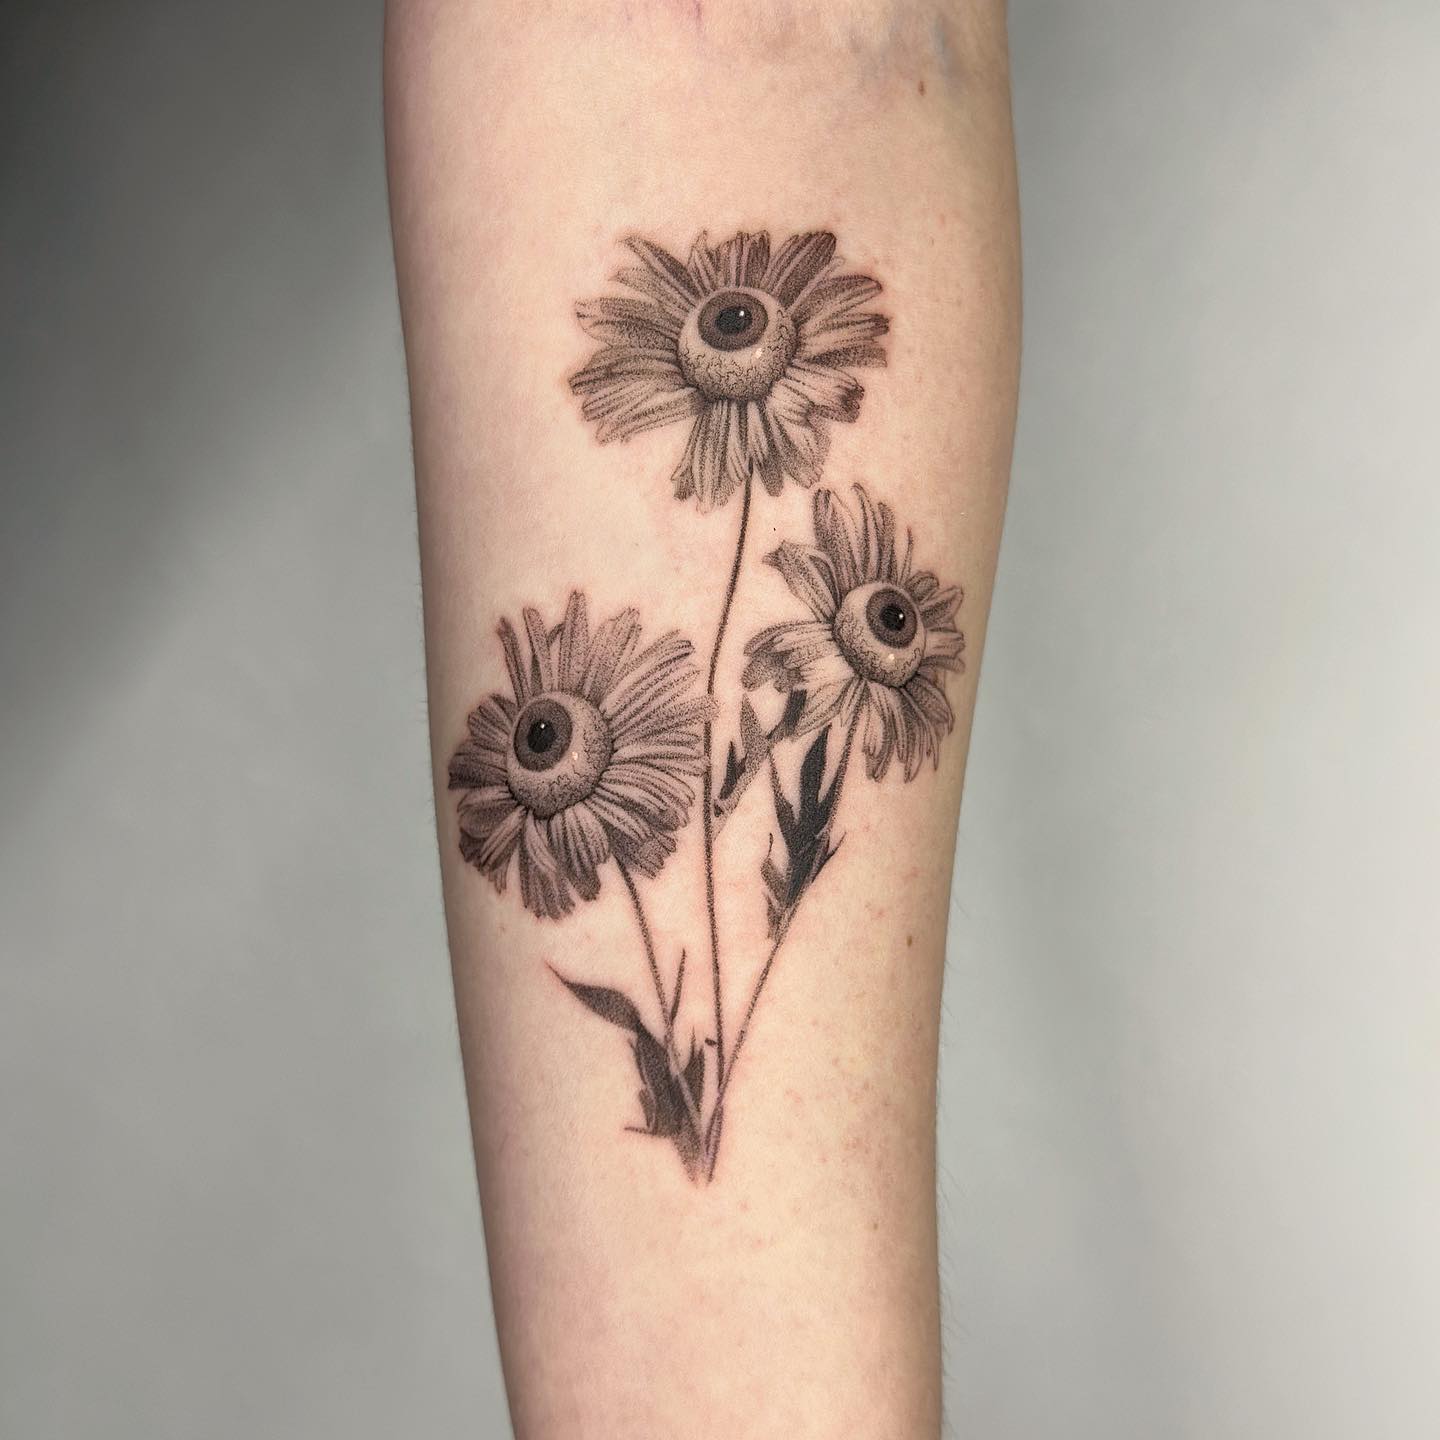 Flower forearm tattoo by plantsnpokes